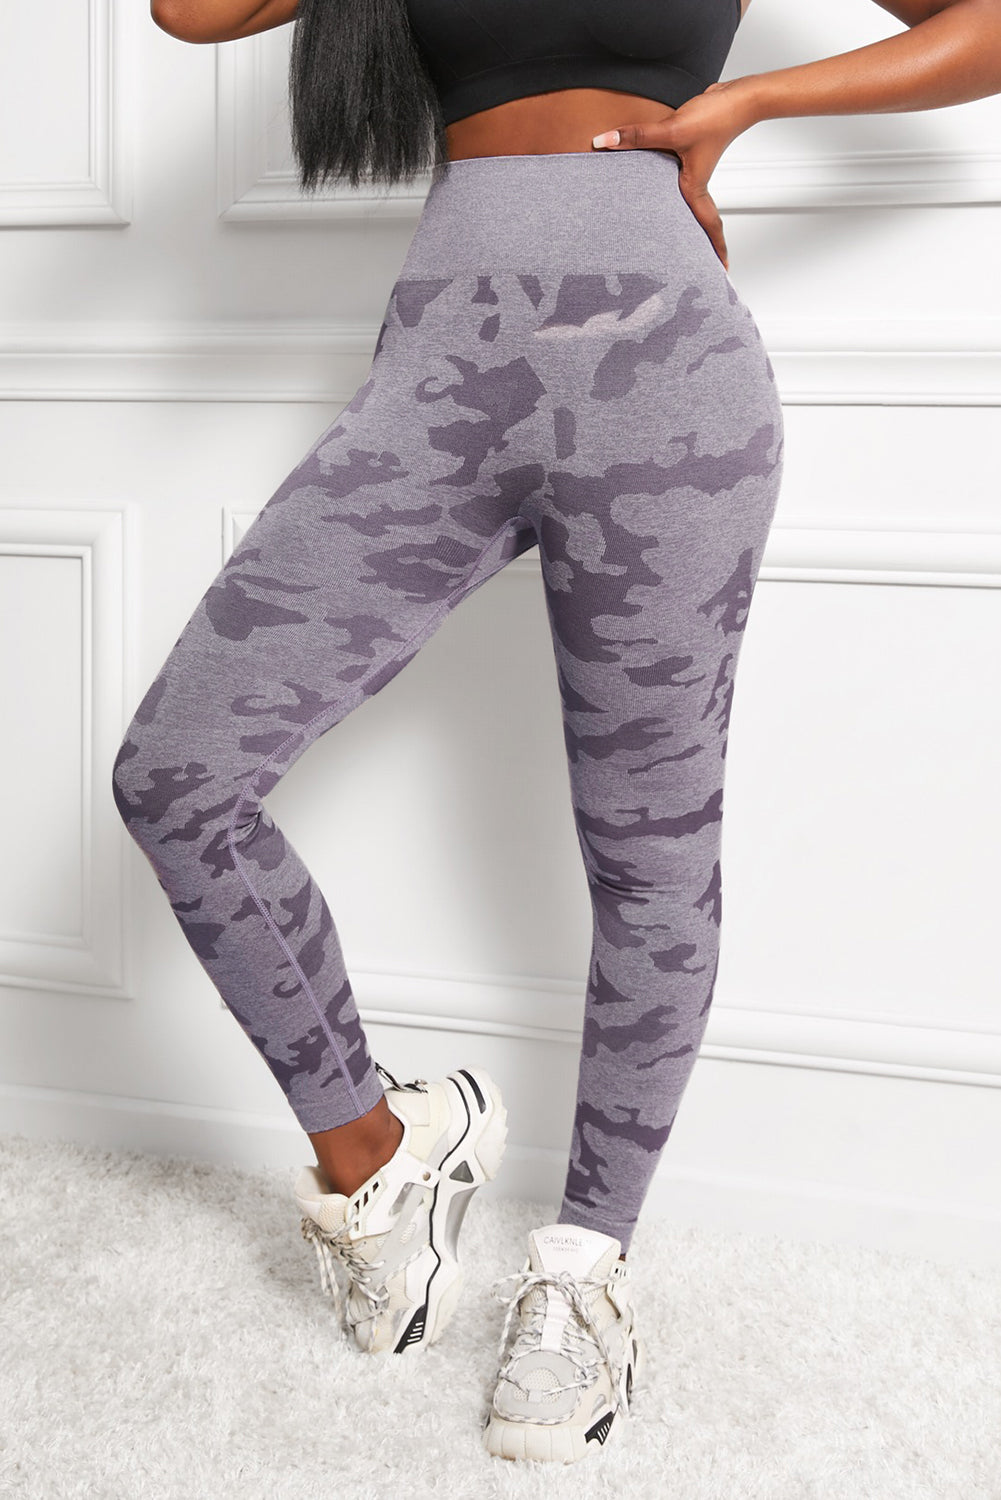 Camo Print Seamless High Waist Yoga Leggings - DromedarShop.com Online Boutique